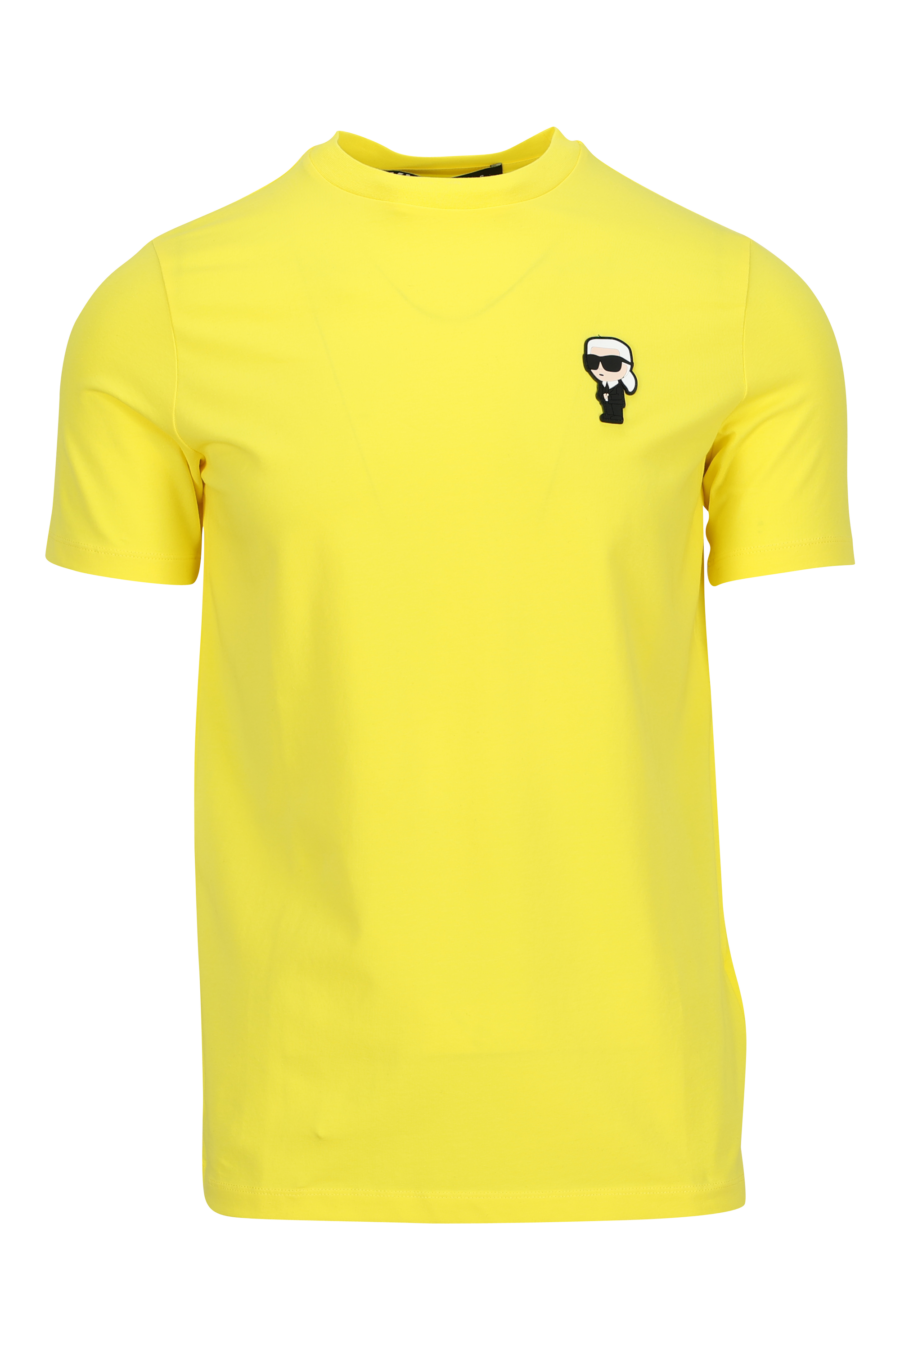 Camiseta amarilla con minilogo "karl" en goma - 4062226954433